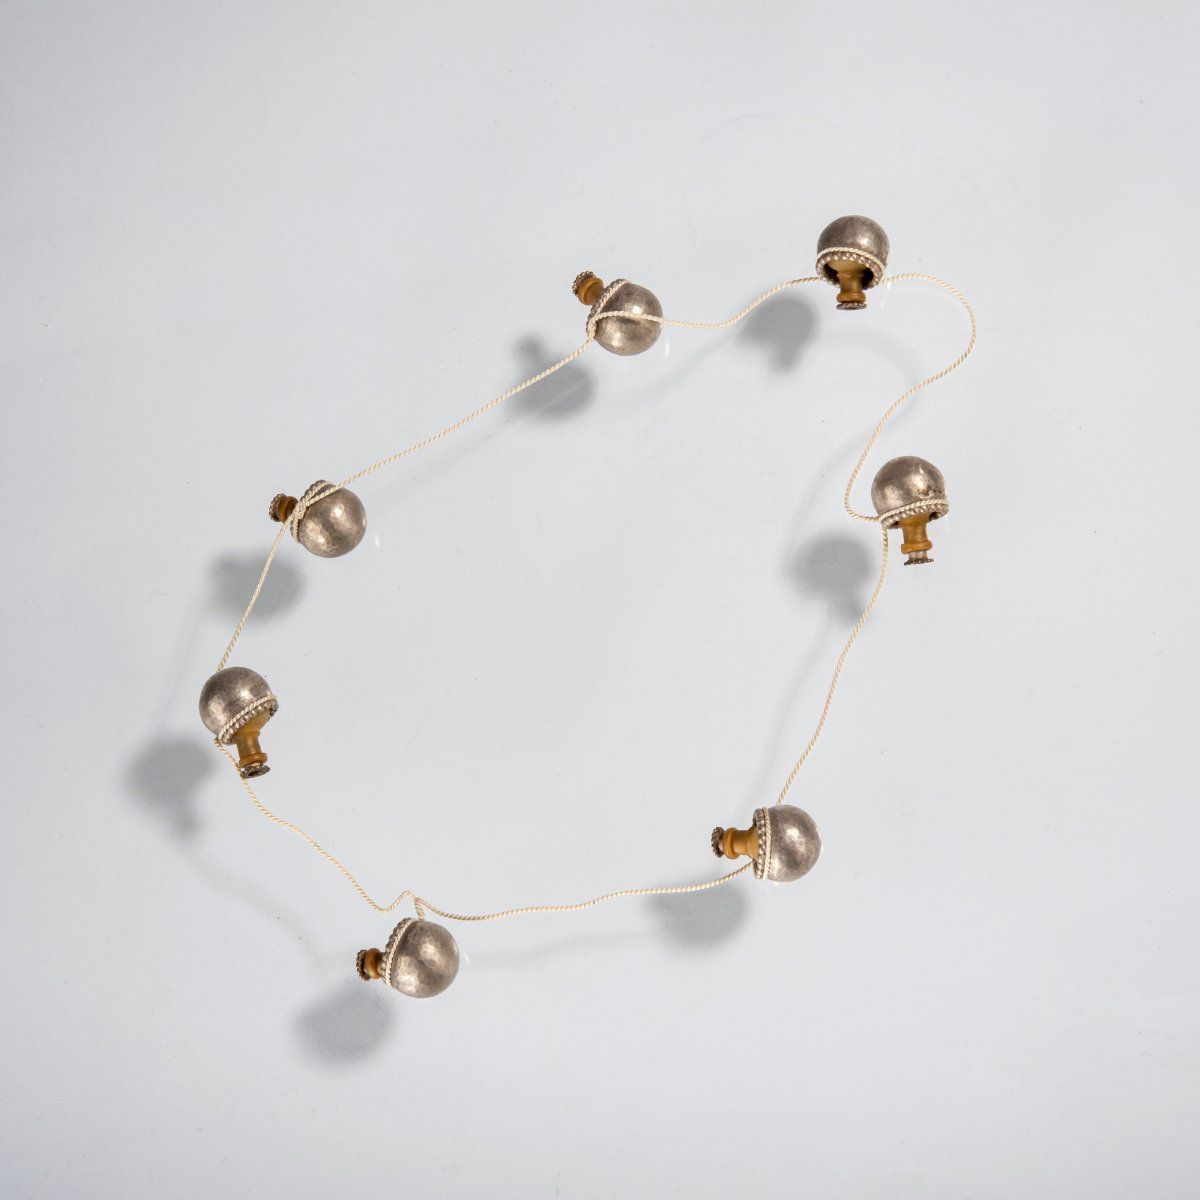 Null 卡蒂亚-普林斯（荷兰哈勒姆，1970年-居住在阿姆斯特丹），项链，1999年，银碗中的橡胶元素是可移动的。银，橡胶，丝绸。91克。长36毫米。

没有&hellip;